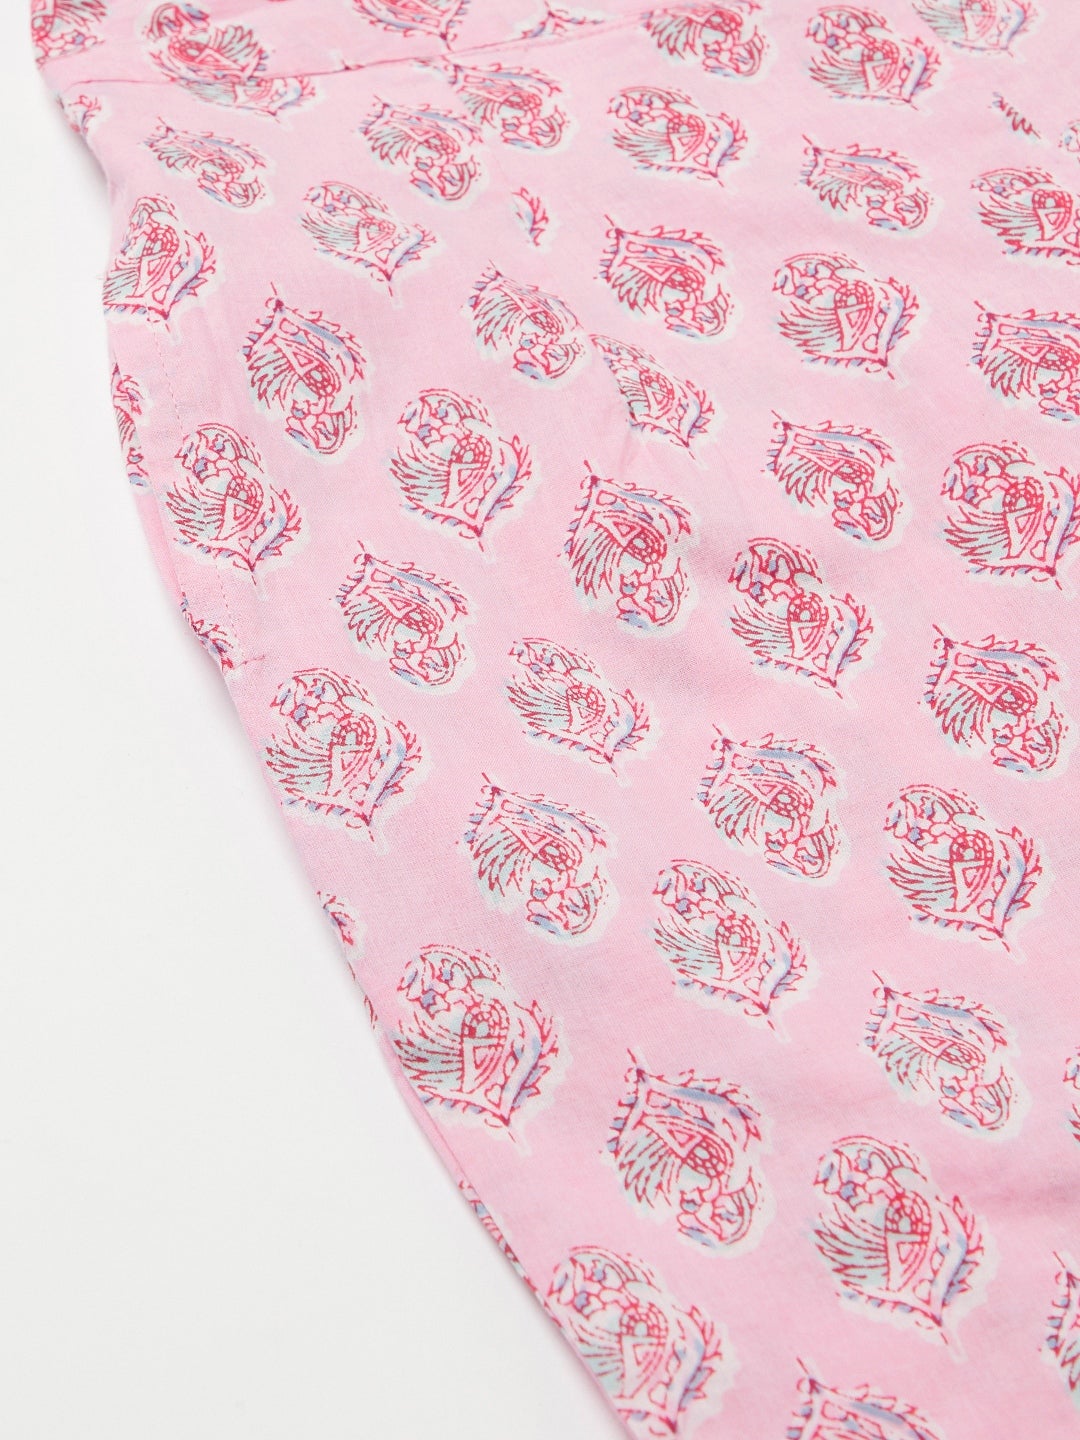 Women's Pink Floral Printed Cotton Kurta Pant Set - Wahenoor